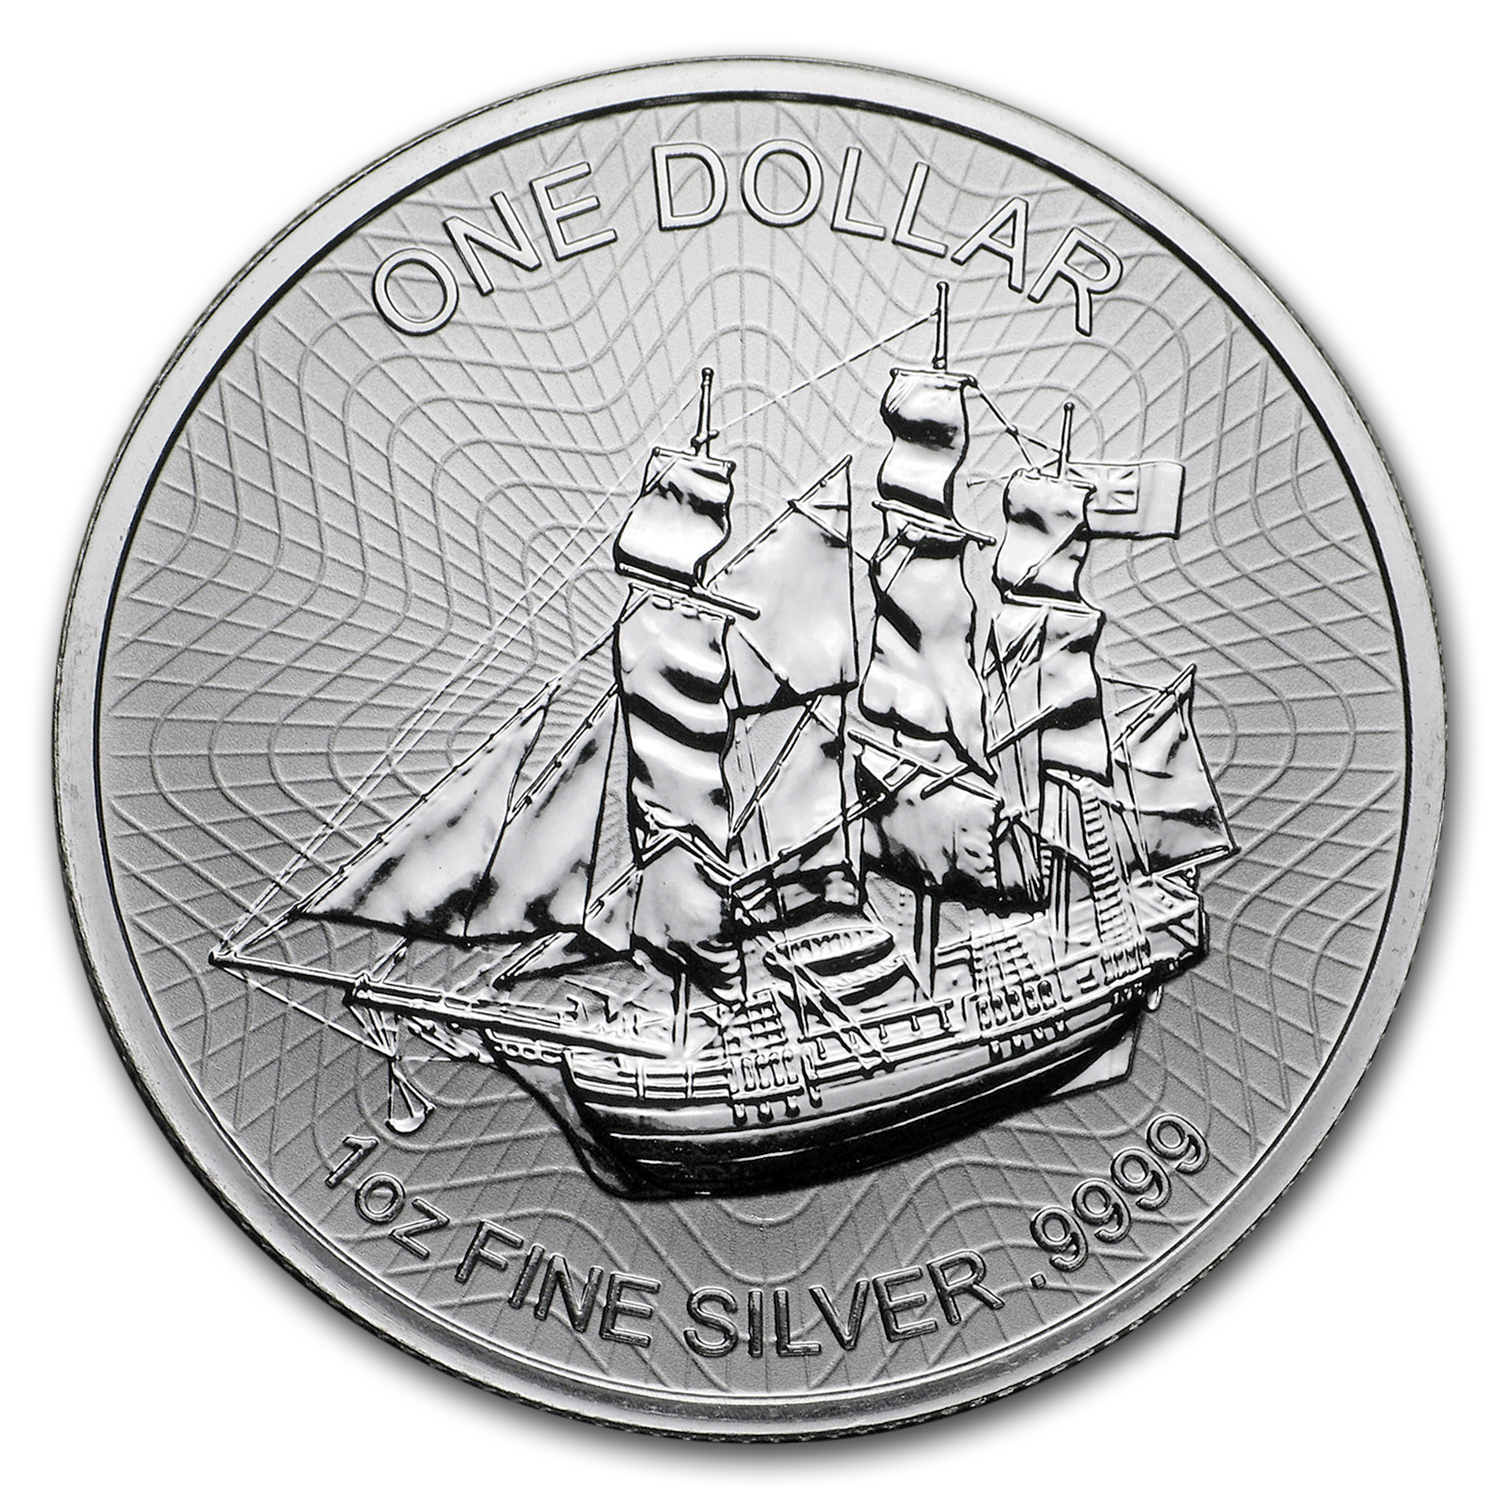 2020 Silver 2 oz Cook Islands Bounty Coin